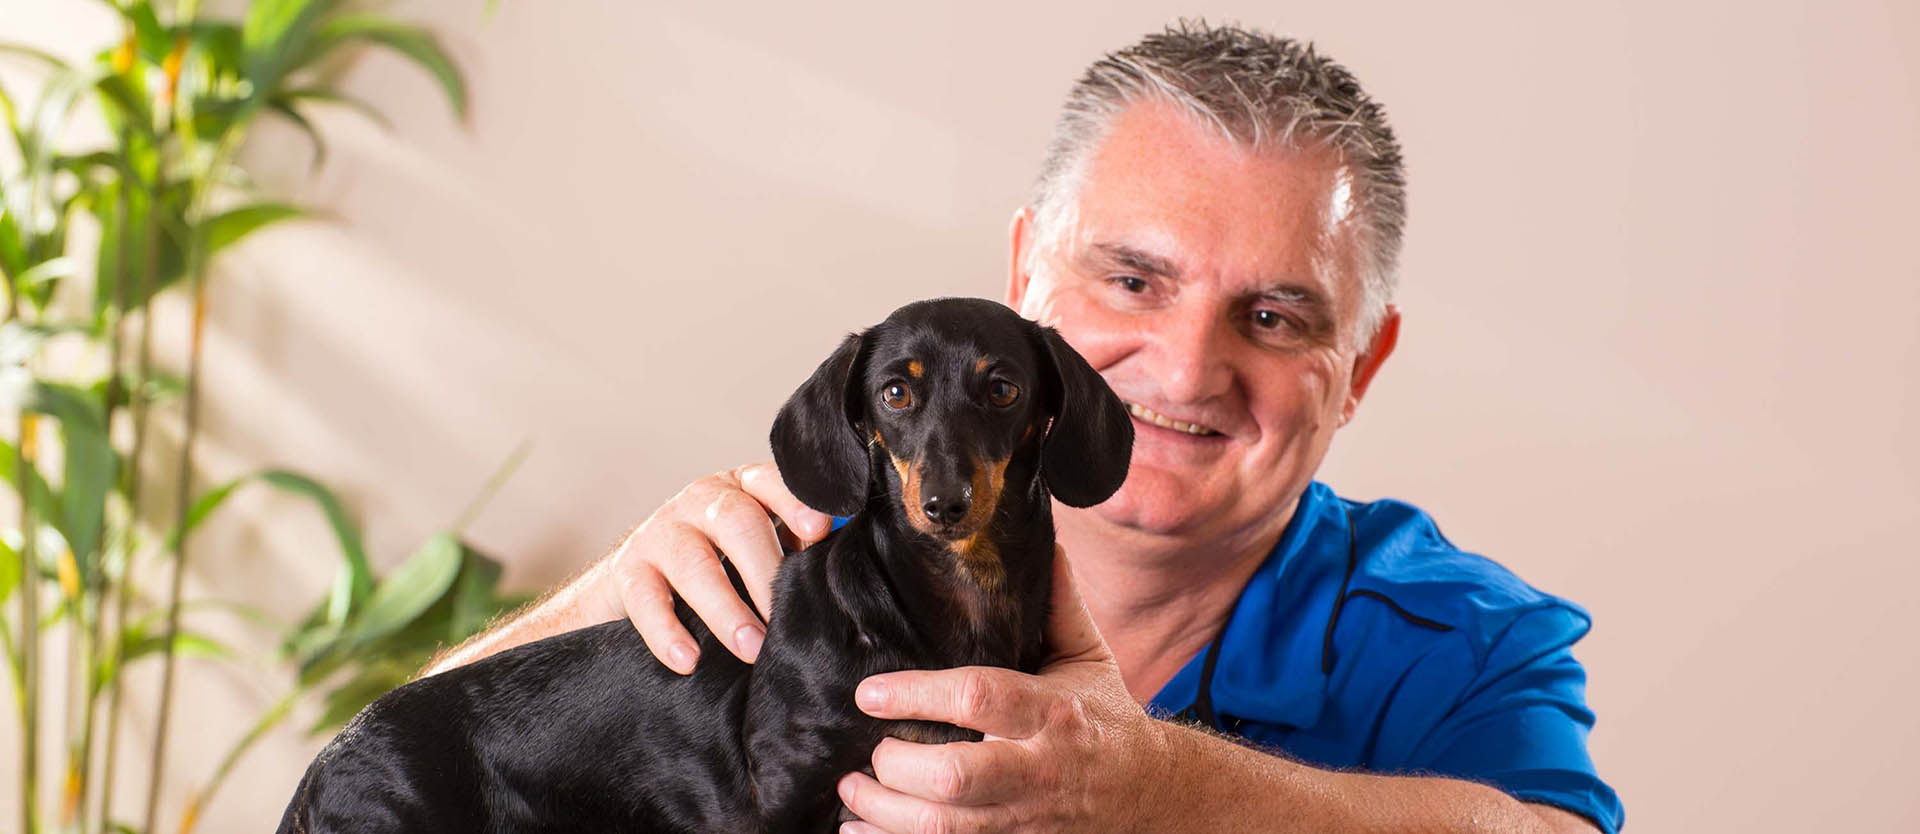 Tony Sherry treating a dog